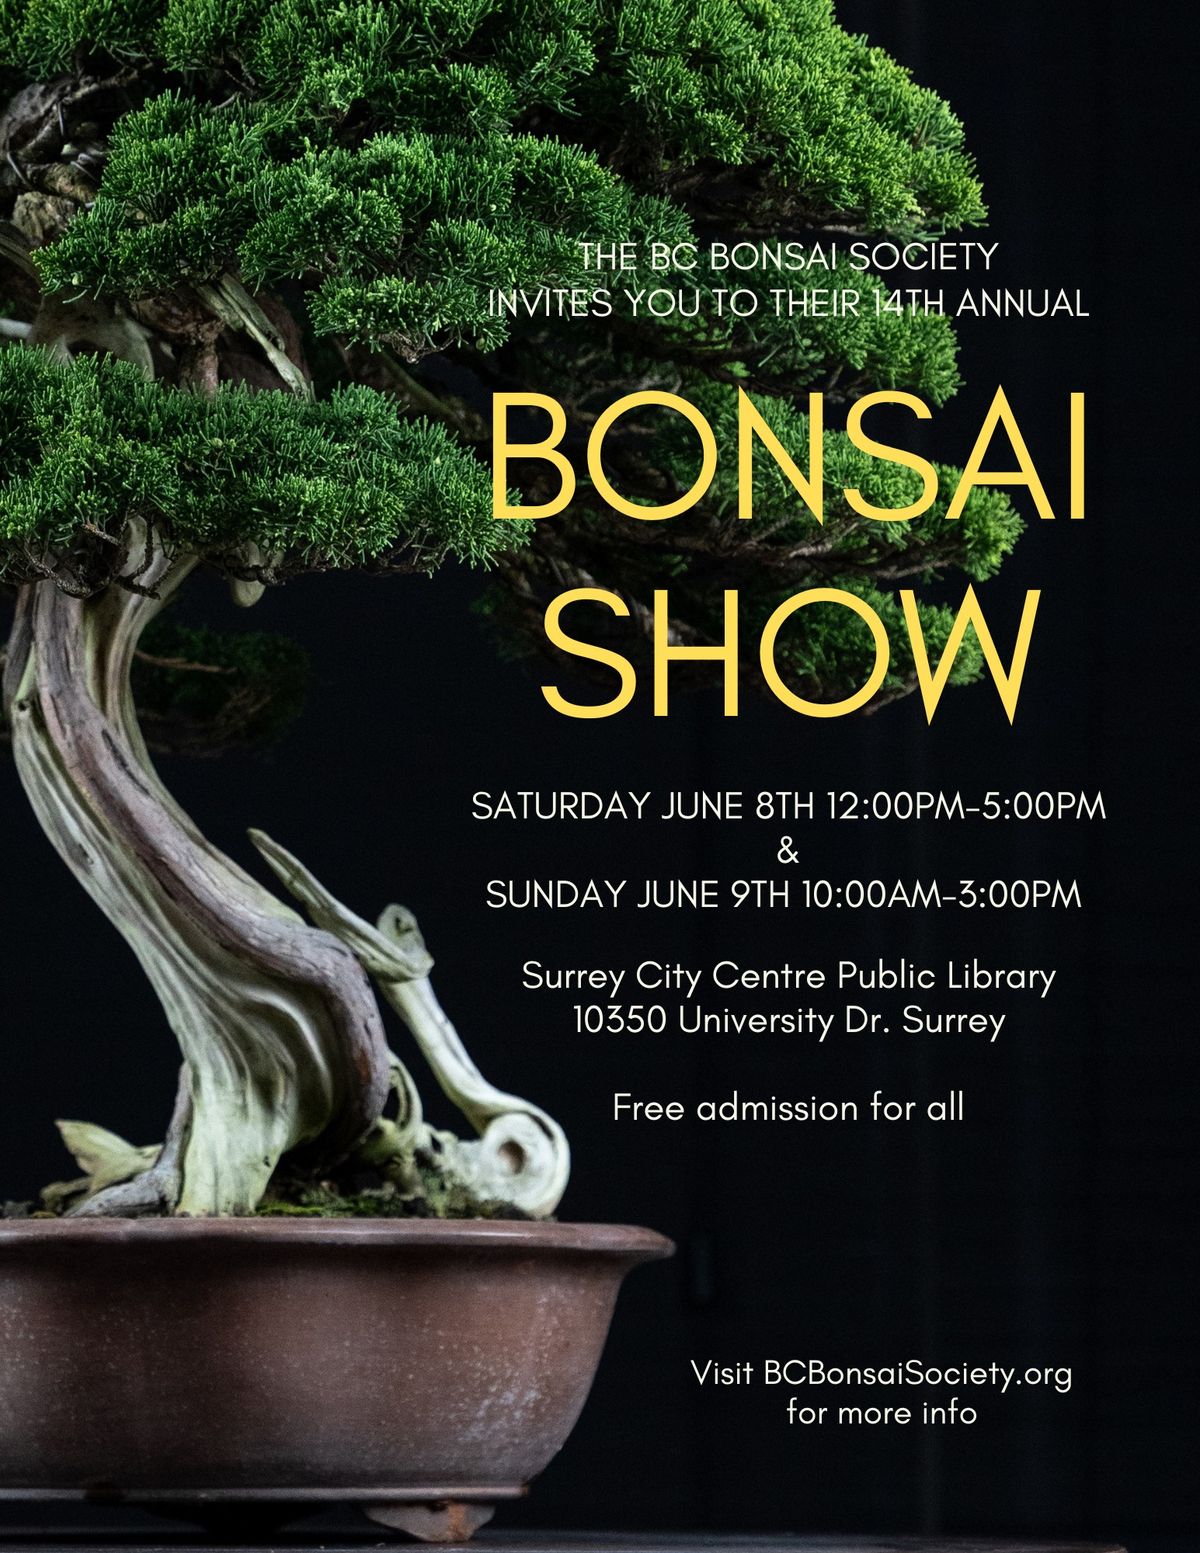 BC Bonsai Society's 14th Annual Bonsai Show